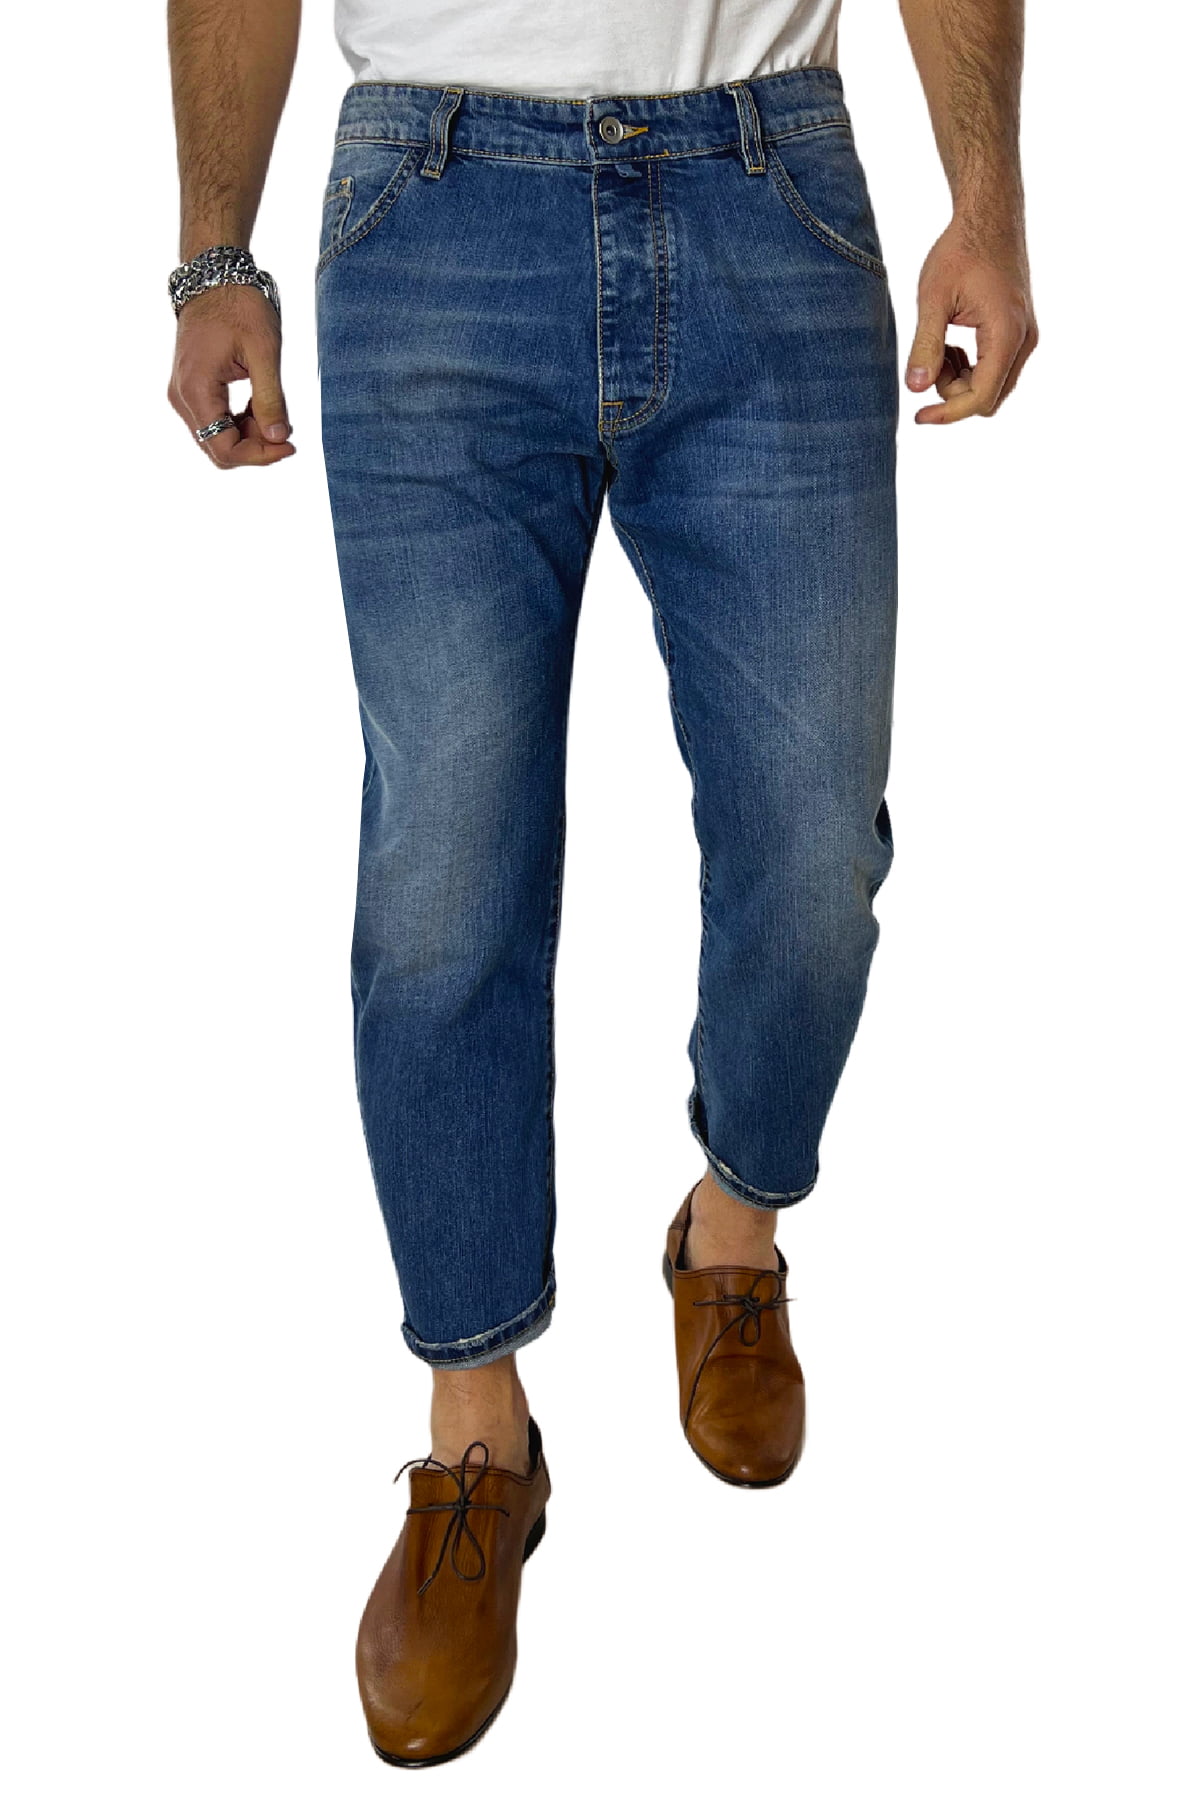 Jeans da uomo con sfumature beige modello 5 tasche regular fit made in italy